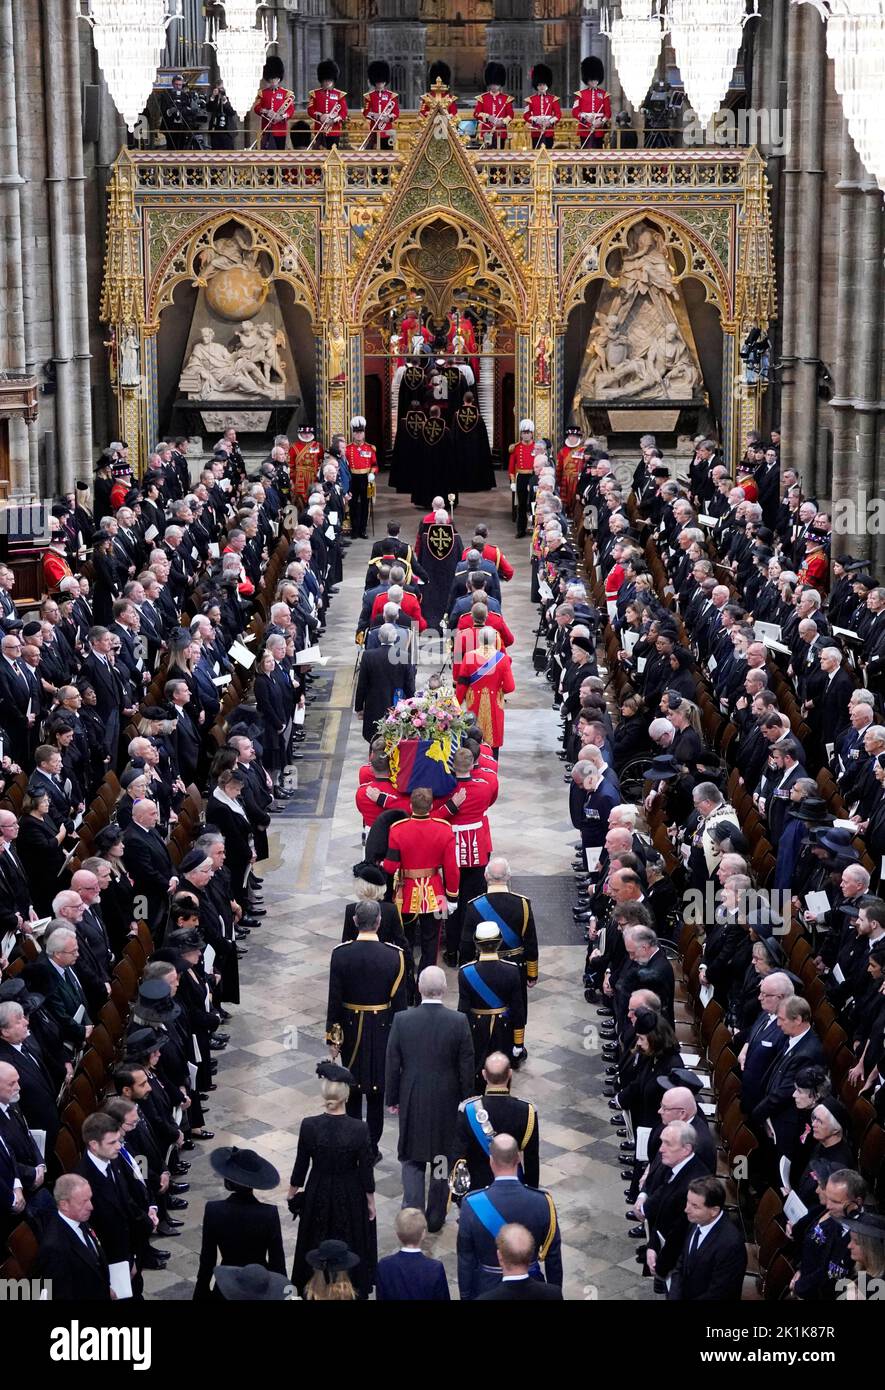 Le roi Charles III et les membres de la famille royale suivent derrière le cercueil de la reine Elizabeth II lorsqu'il arrive à l'abbaye de Westminster, à Londres, pour son funérailles d'État. Date de la photo: Lundi 19 septembre 2022. Banque D'Images